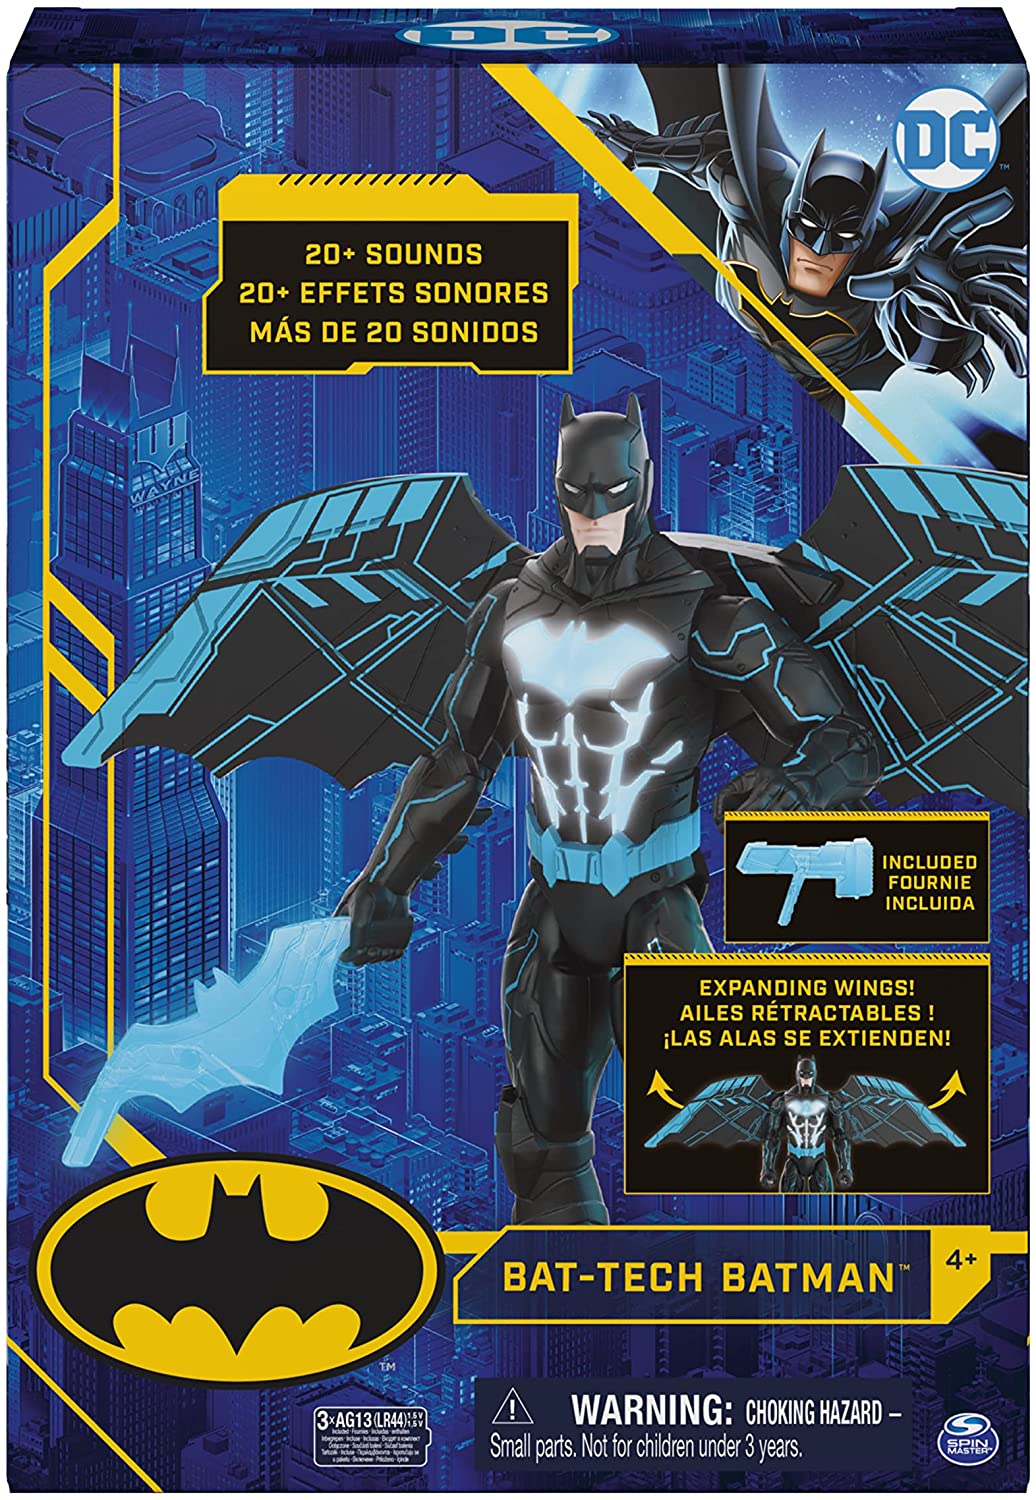 DC Comics Batman 12" Rapid Change Utility Belt Action Figure New with Box